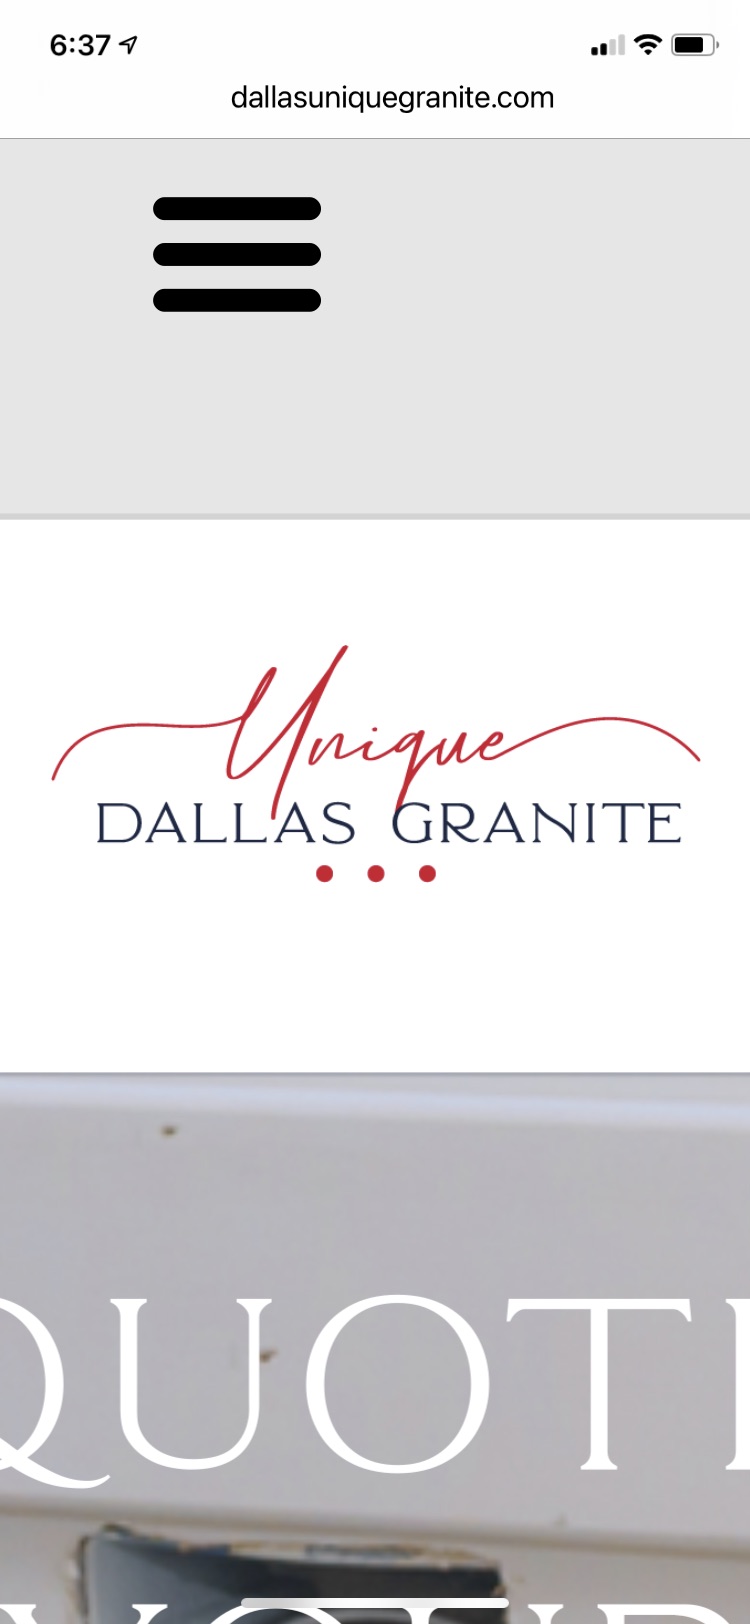 Dallas Unique Granite Logo